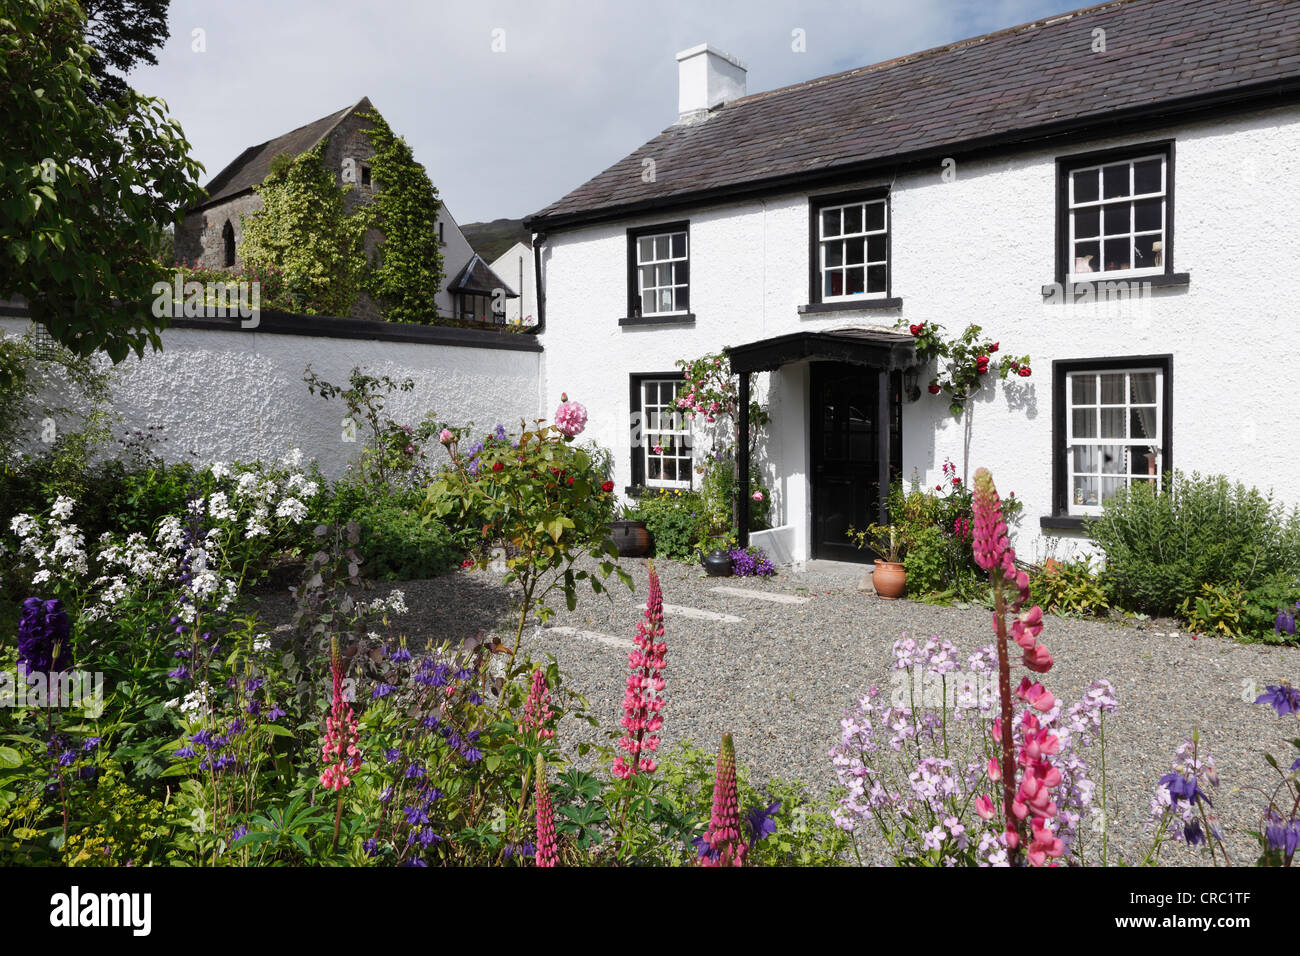 Maison avec jardin plein de fleurs, Carlingford, Péninsule de Cooley, dans le comté de Louth, en Irlande, Europe Banque D'Images